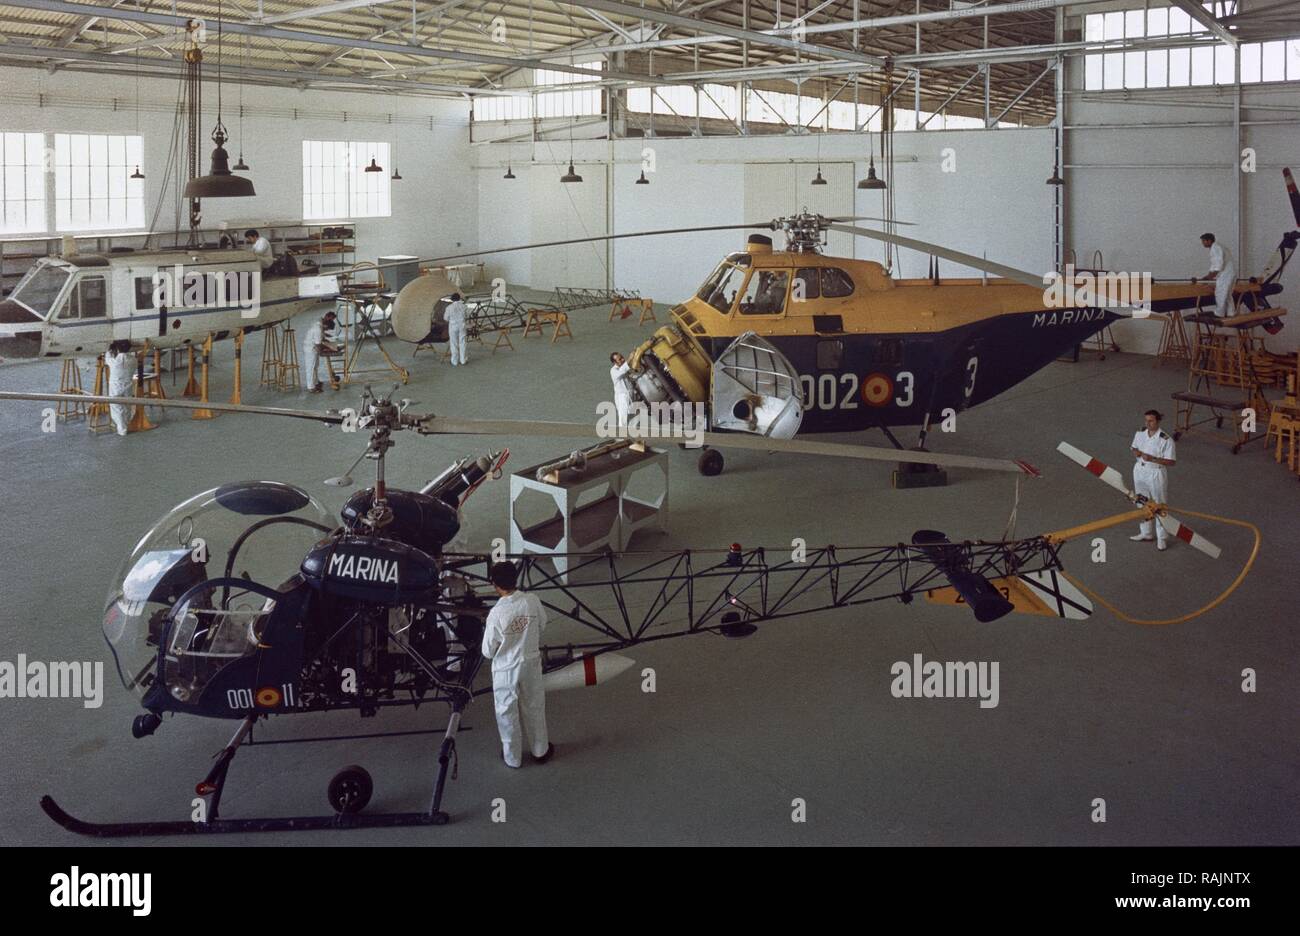 VISTA DE LAS NAVES - Fabricando helicopteros. Ubicación: C. A. S. A. Getafe. MADRID. España. Foto de stock